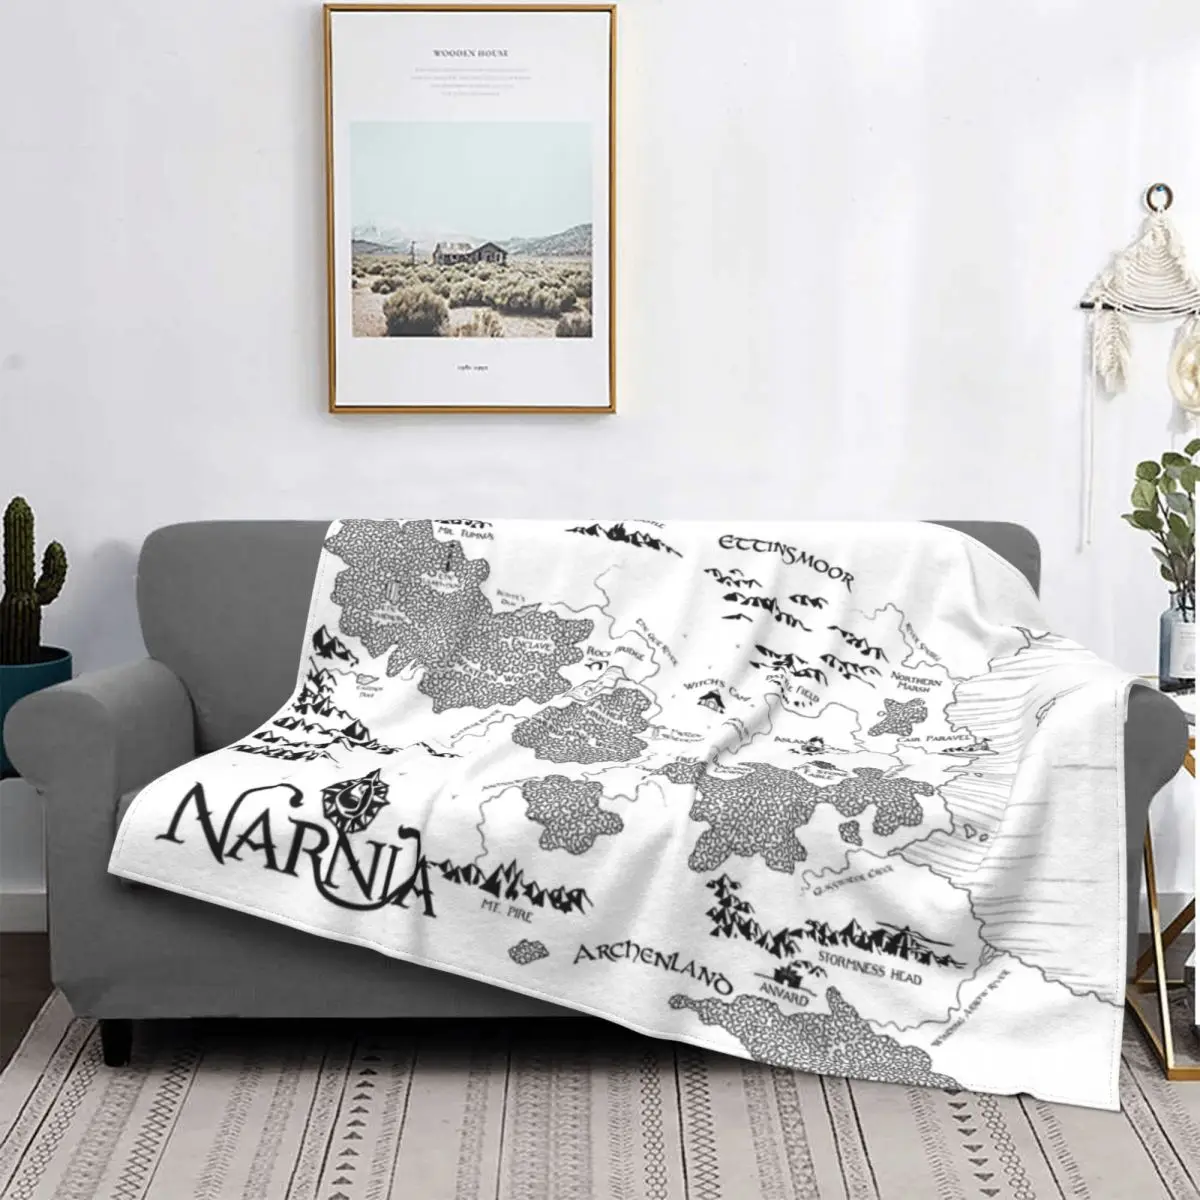 

Белое одеяло с картой Narnia, покрывало для кровати, клетчатая кровать, искусственное Клетчатое одеяло, роскошное пляжное полотенце